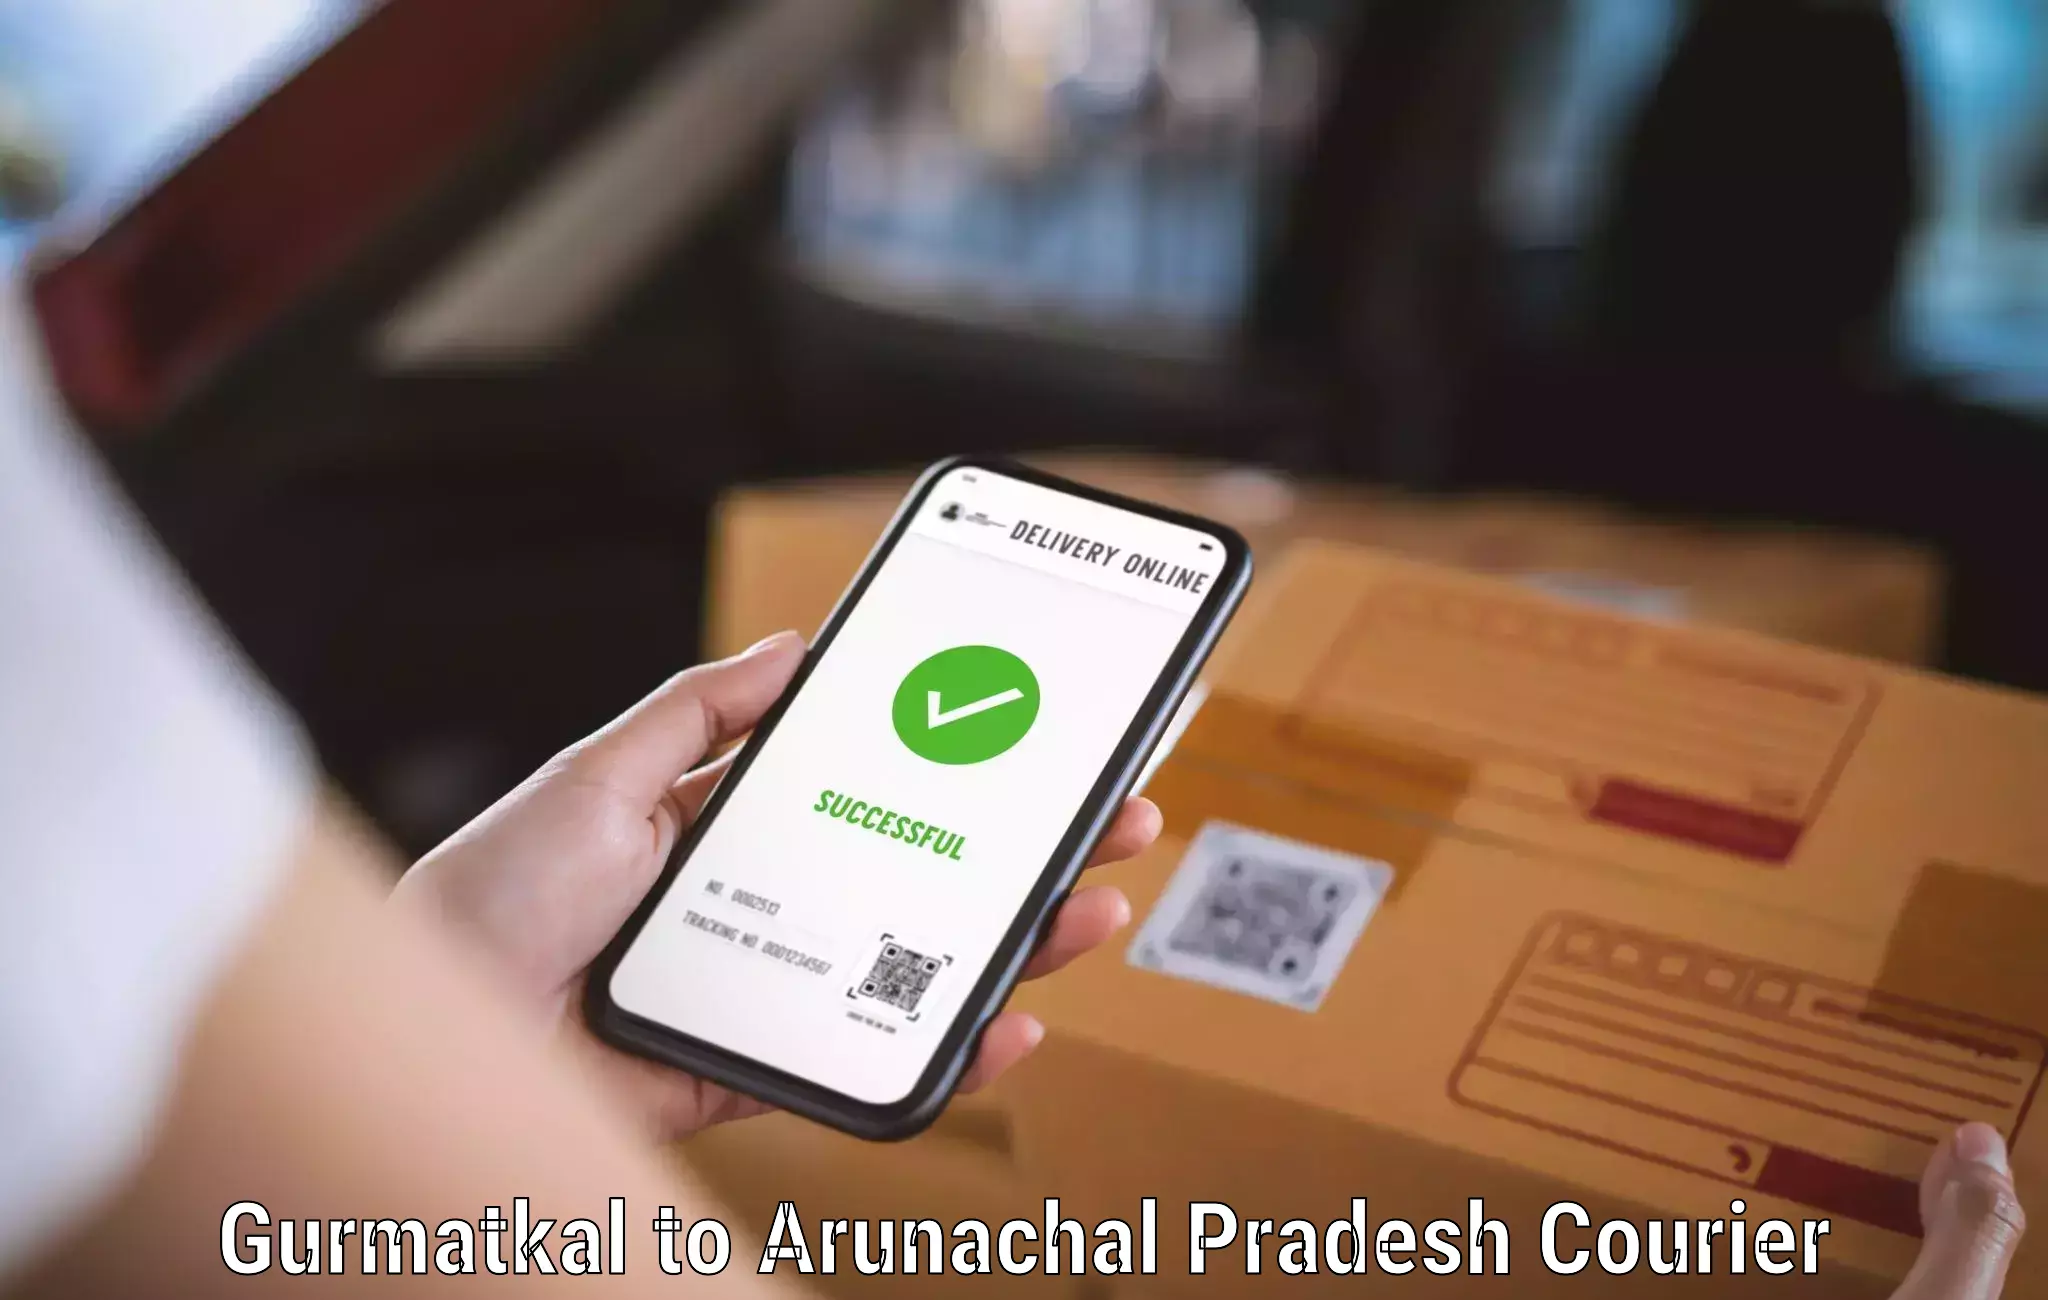 Special handling courier Gurmatkal to Arunachal Pradesh